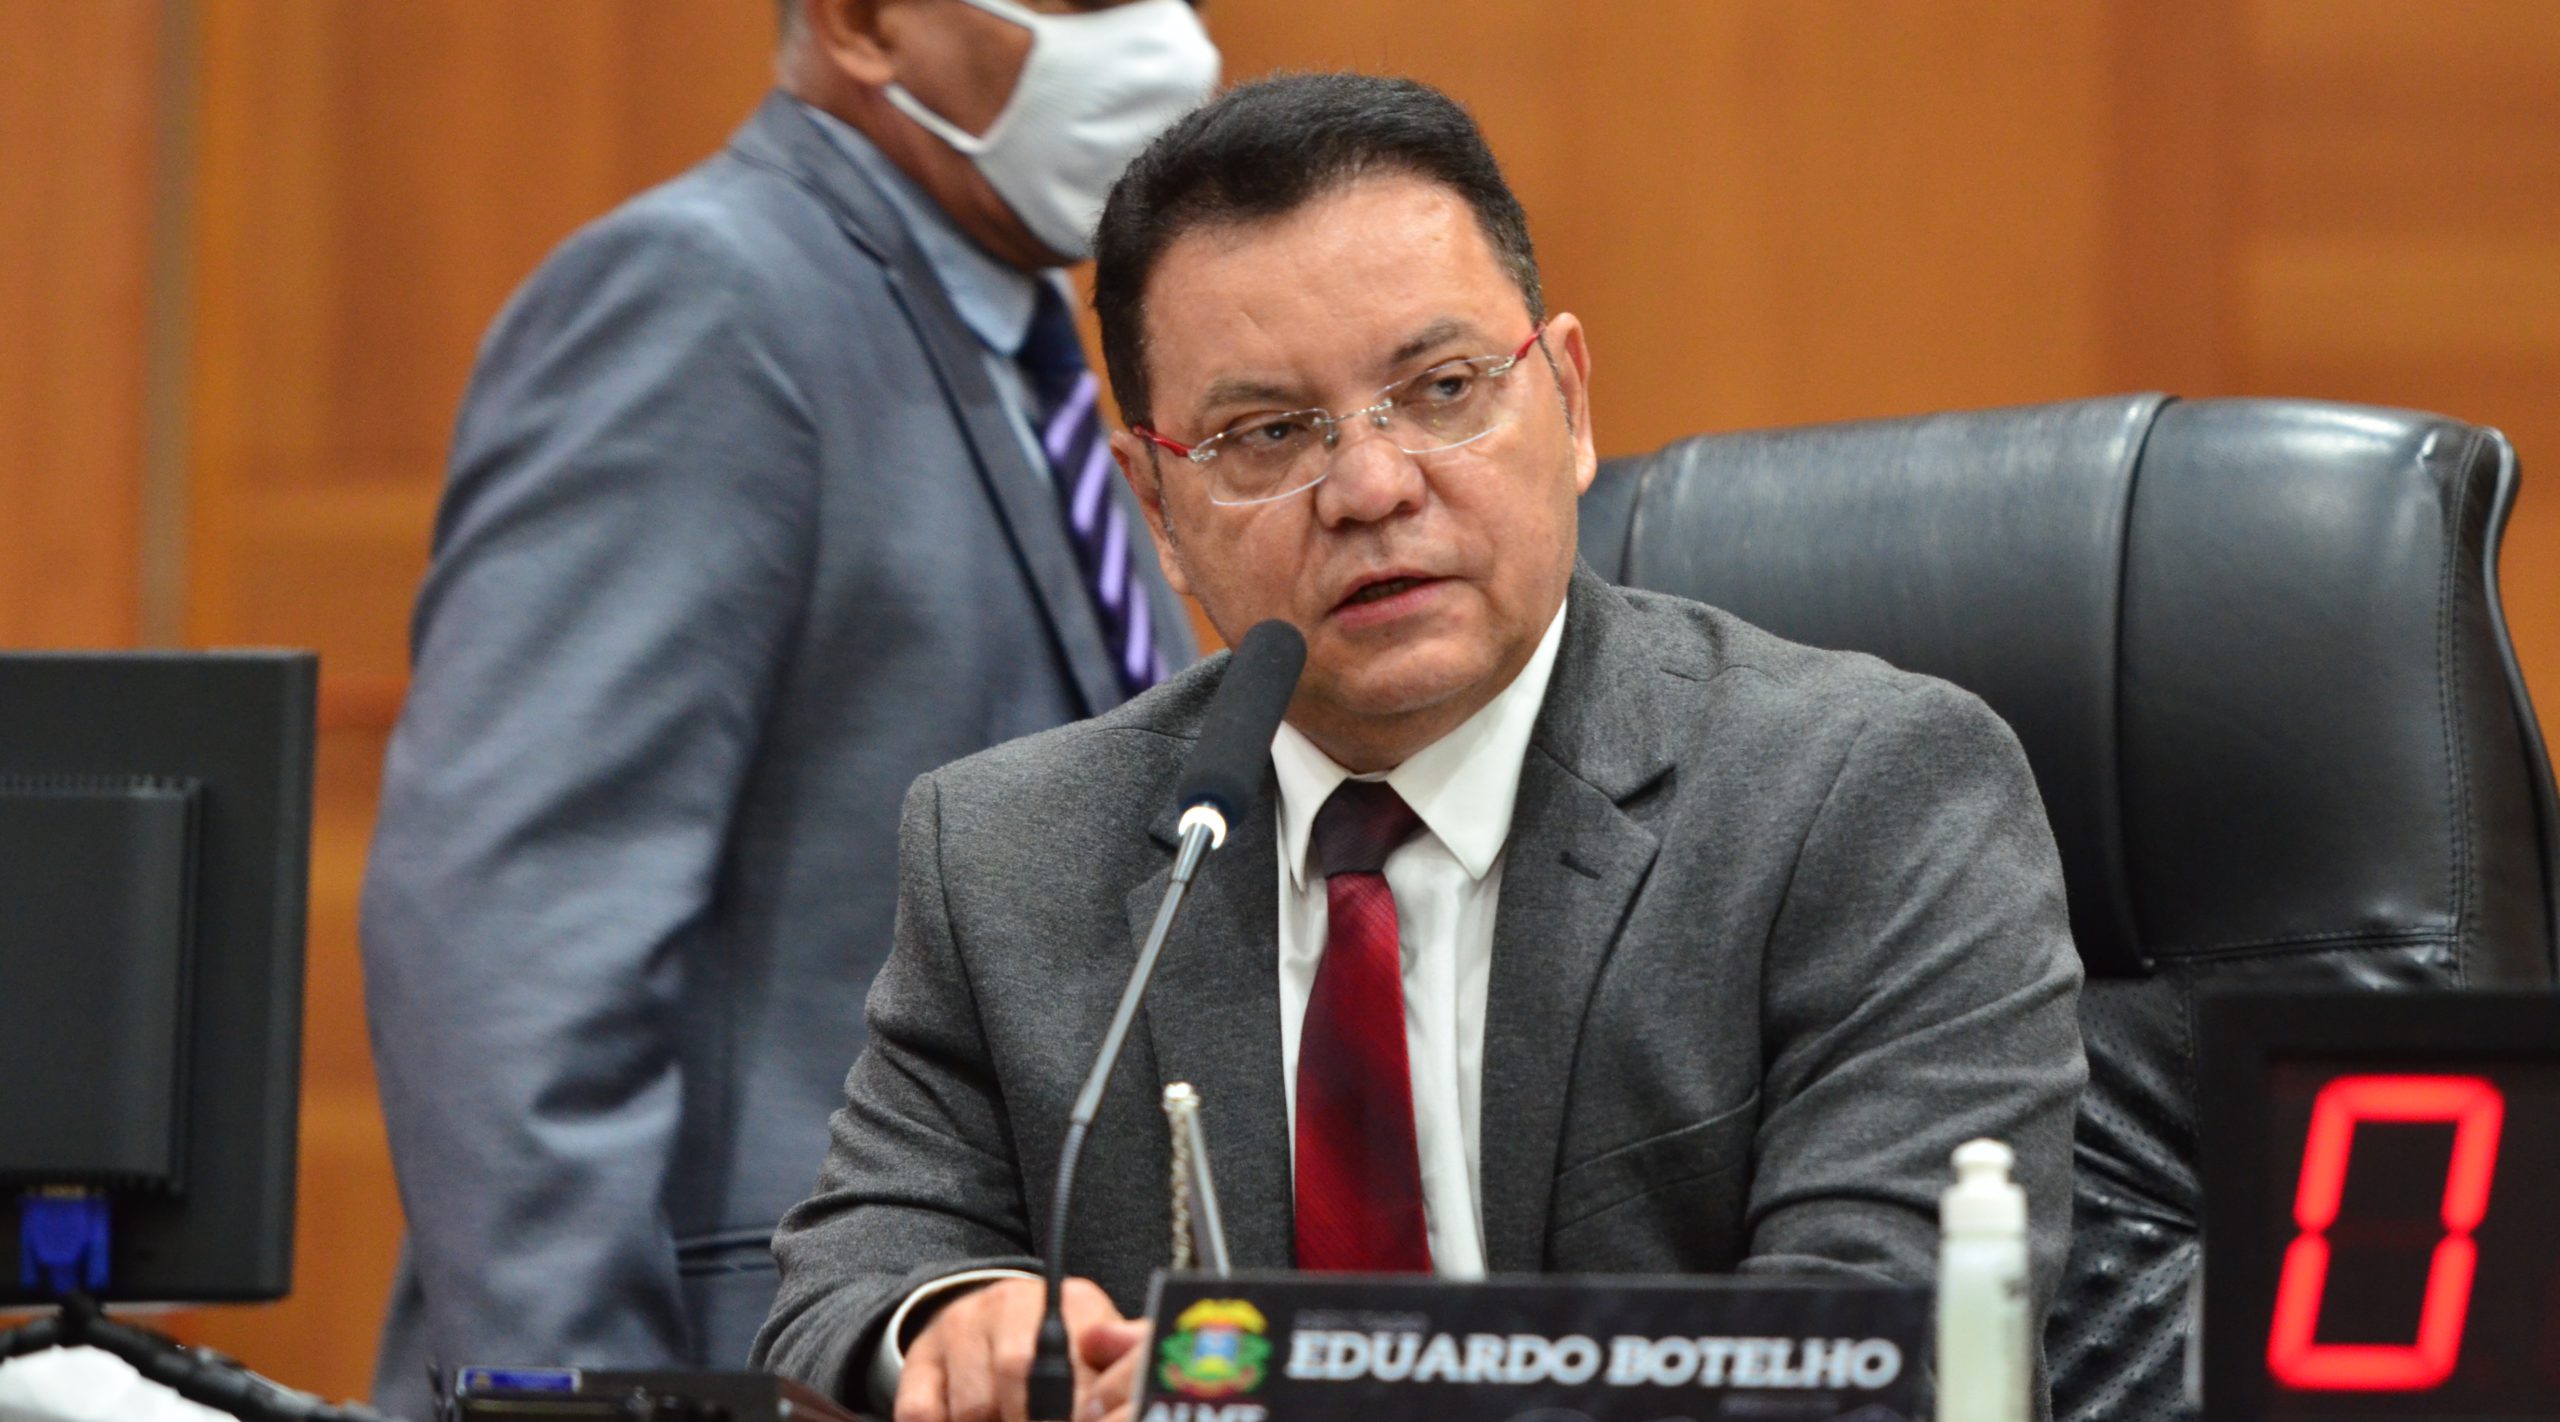 Imagem: Eduardo Botelho scaled Sem discussão sobre 2022, Botelho sugere Fabio fora da presidência